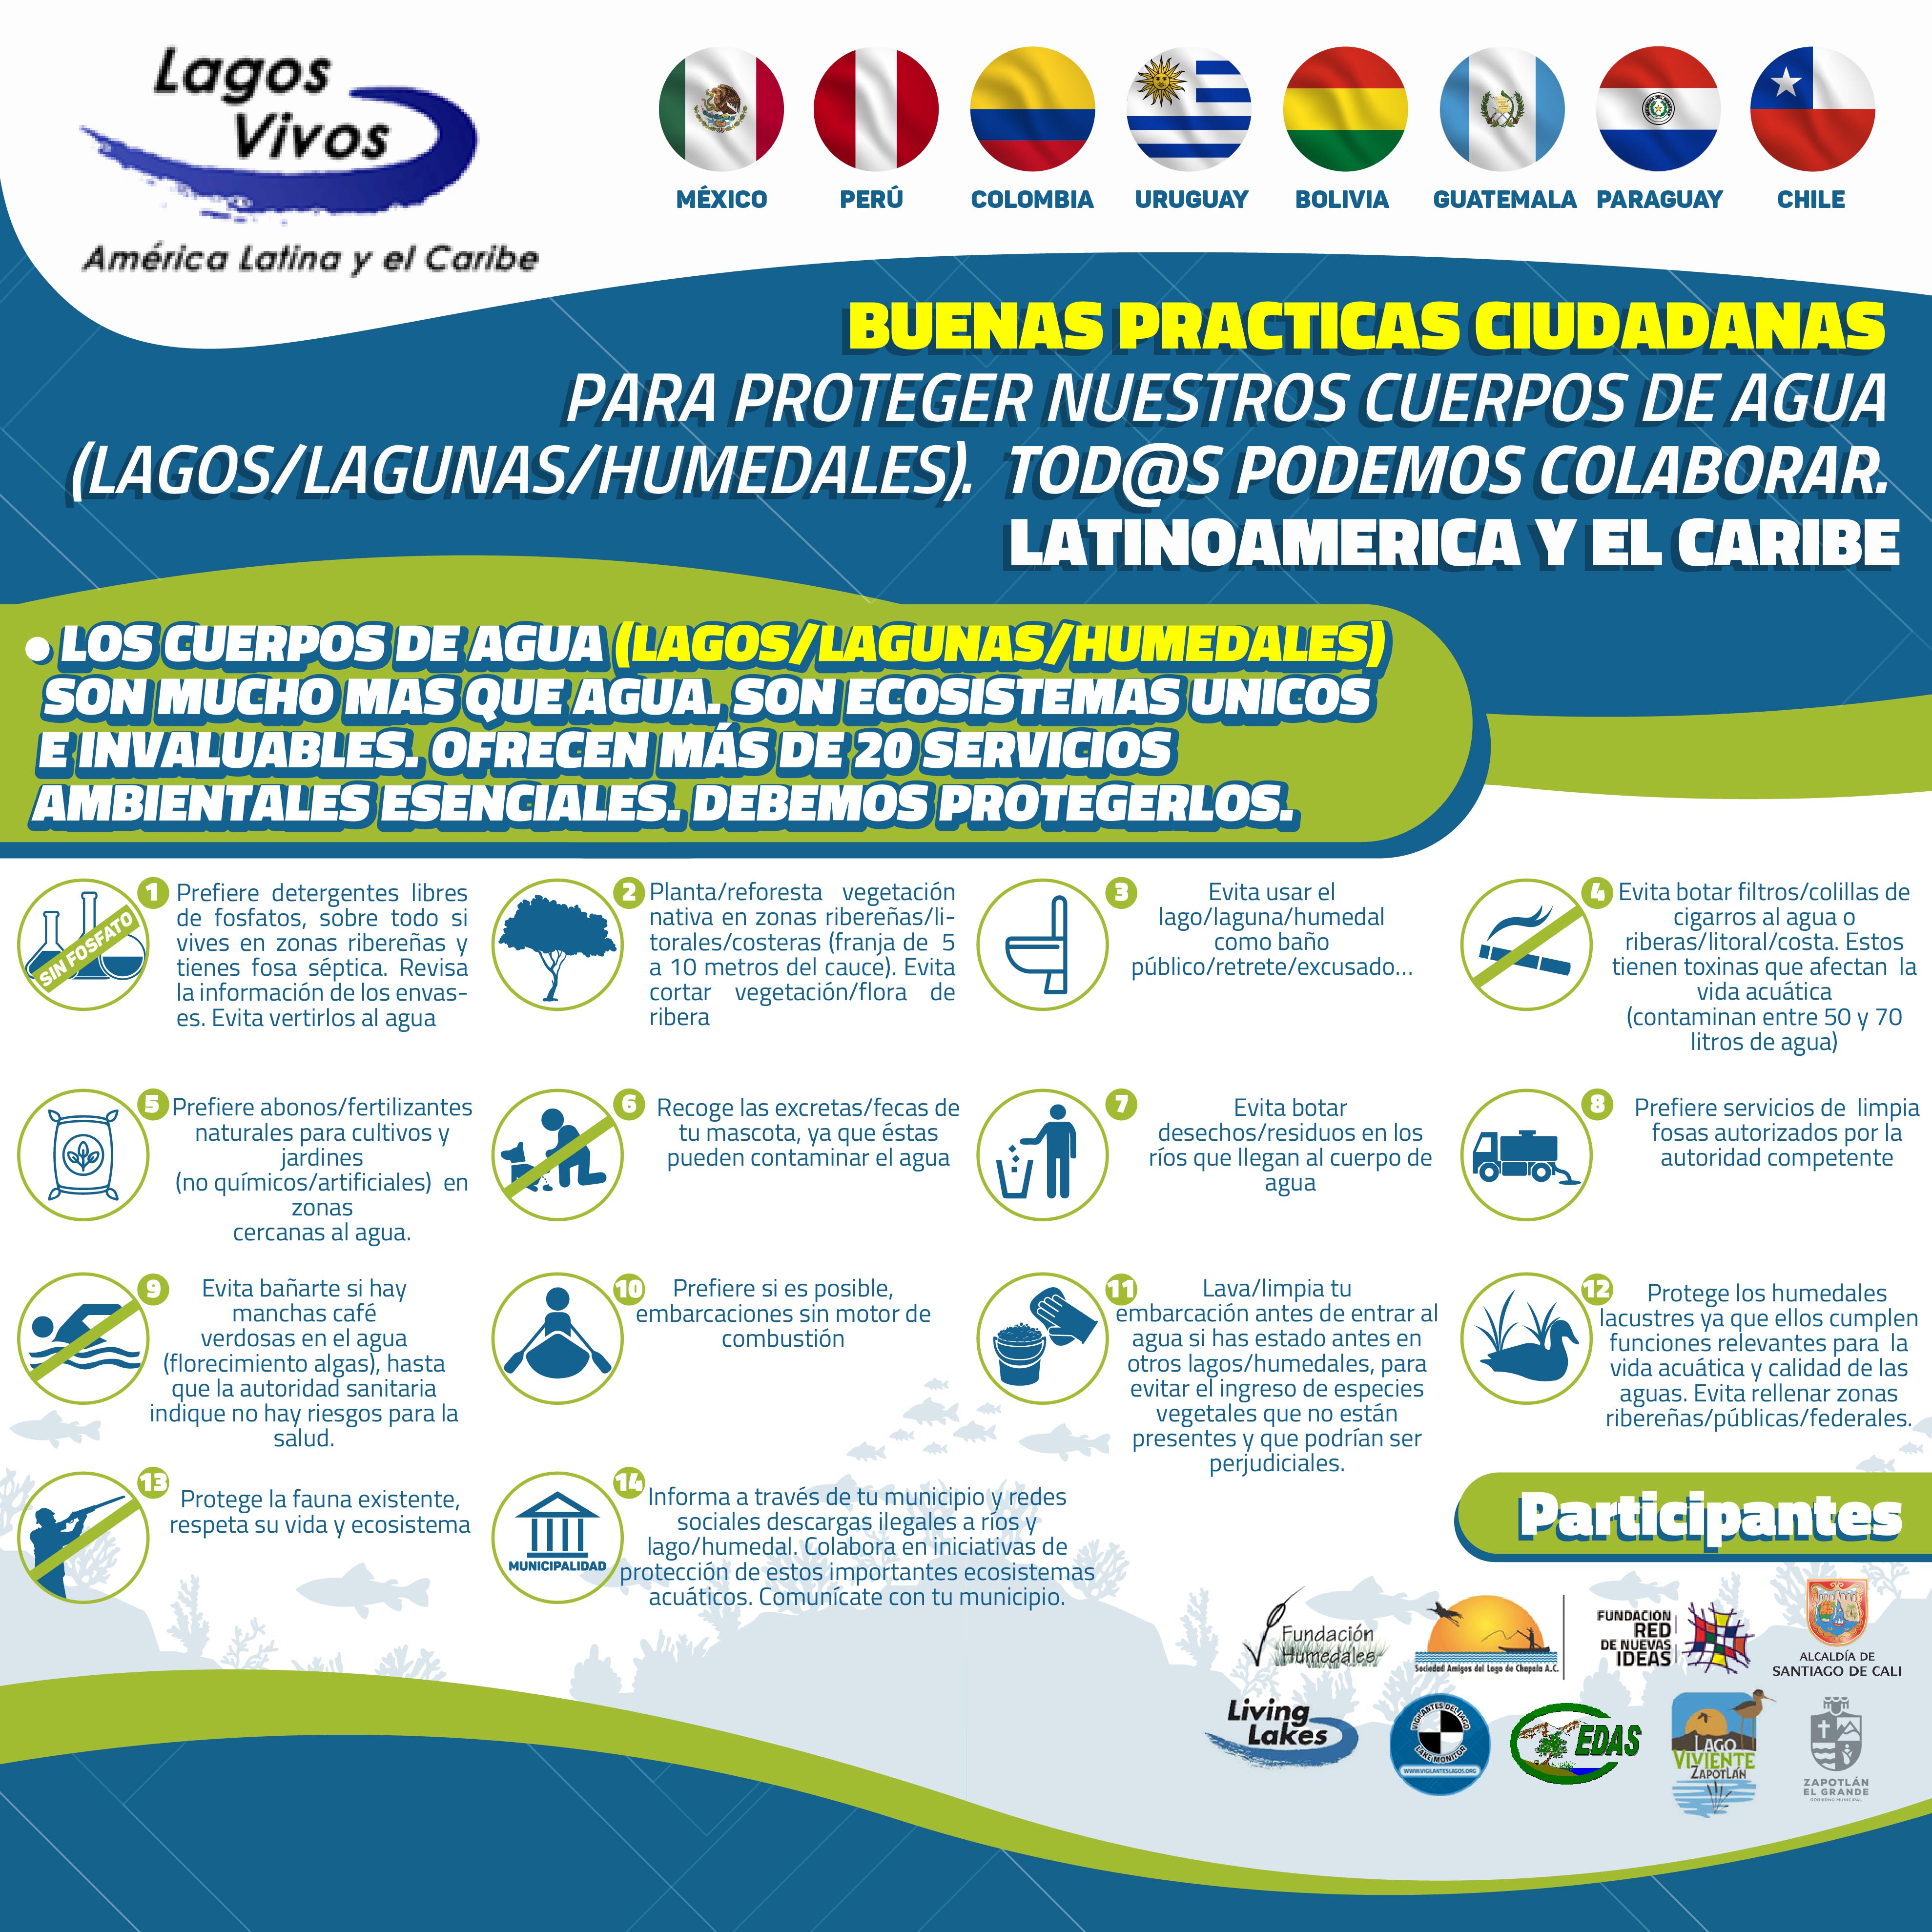 El afiche invita a realizar buenas prácticas ciudadanas por la protección de los lagos. Foto: Vigilantes del Lago